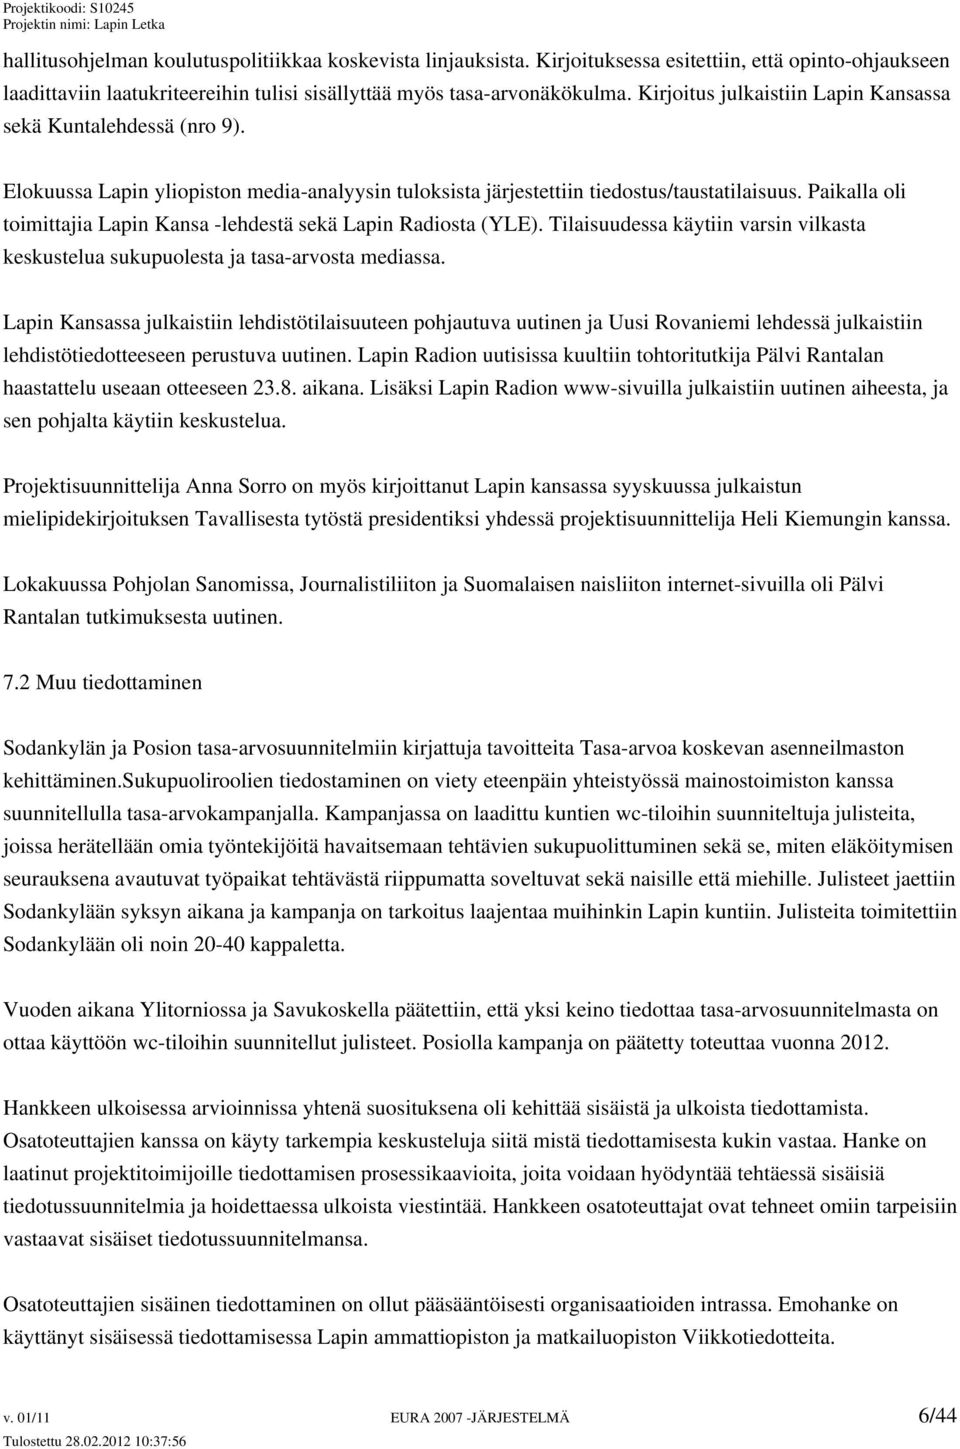 Paikalla oli toimittajia Lapin Kansa -lehdestä sekä Lapin Radiosta (YLE). Tilaisuudessa käytiin varsin vilkasta keskustelua sukupuolesta ja tasa-arvosta mediassa.